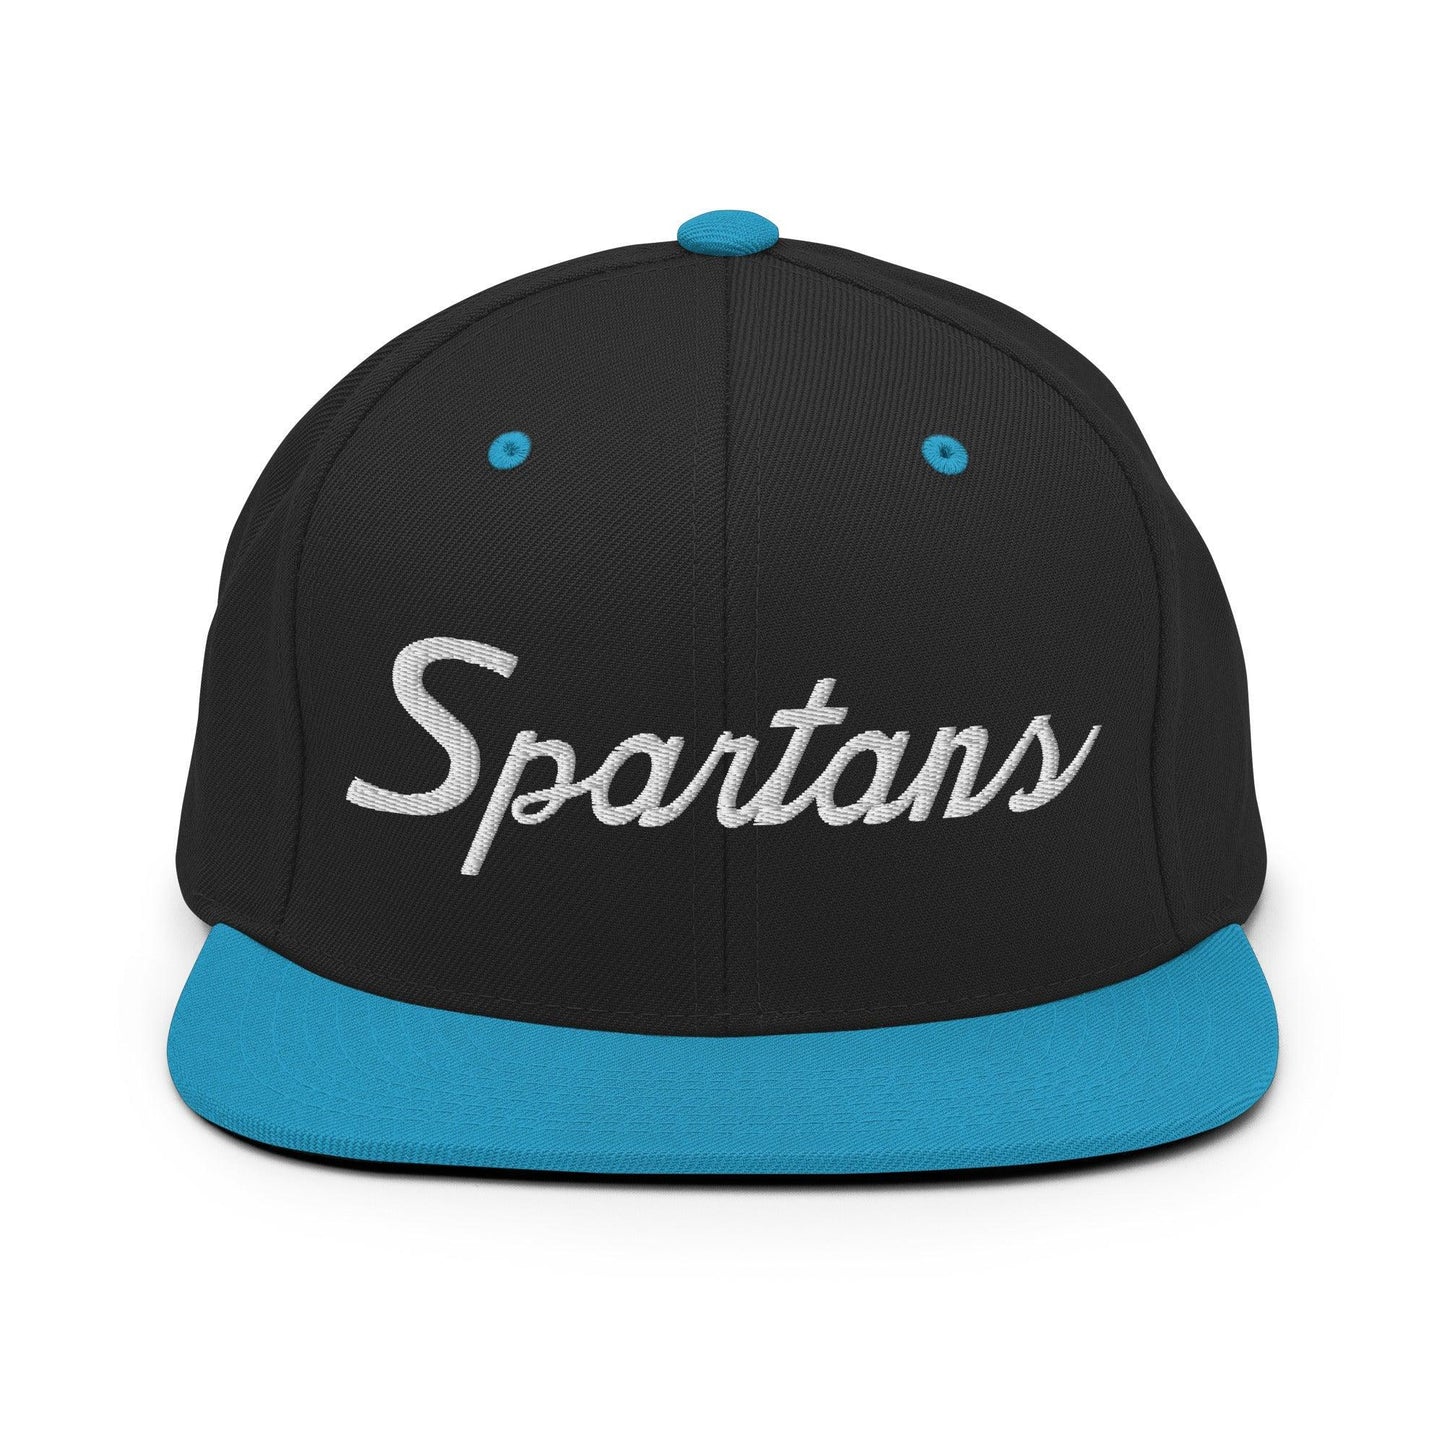 Spartans School Mascot Script Snapback Hat Black Teal